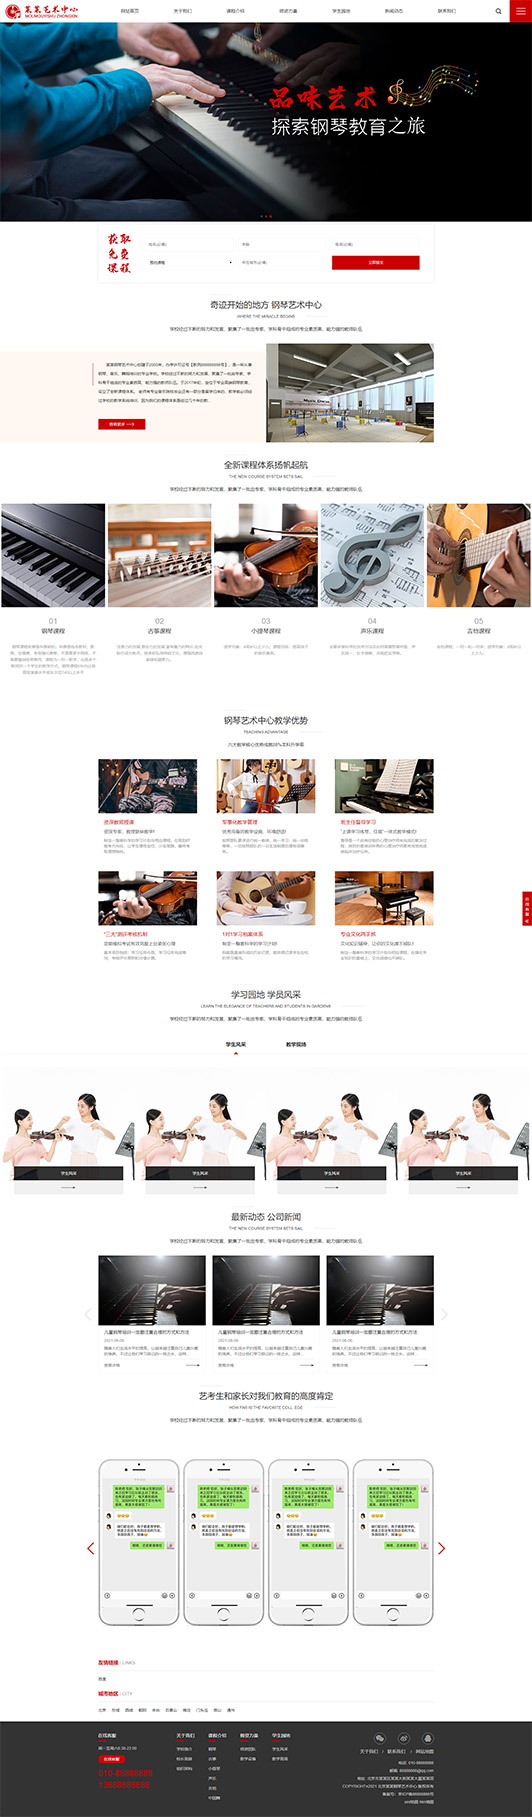 呼和浩特钢琴艺术培训公司响应式企业网站